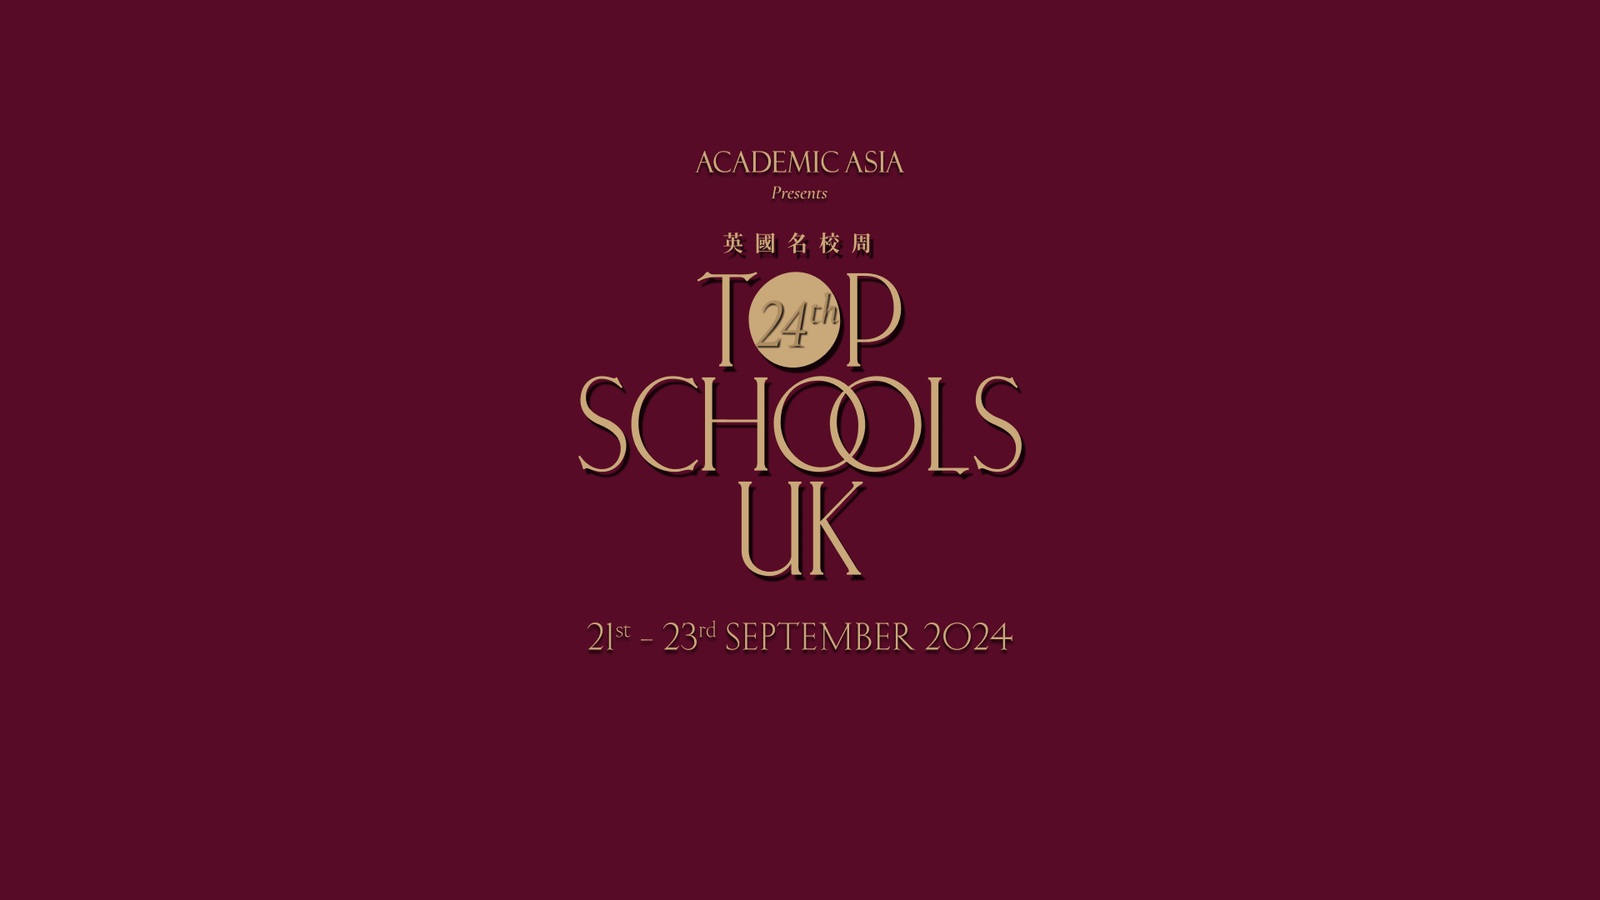 Top Schools UK